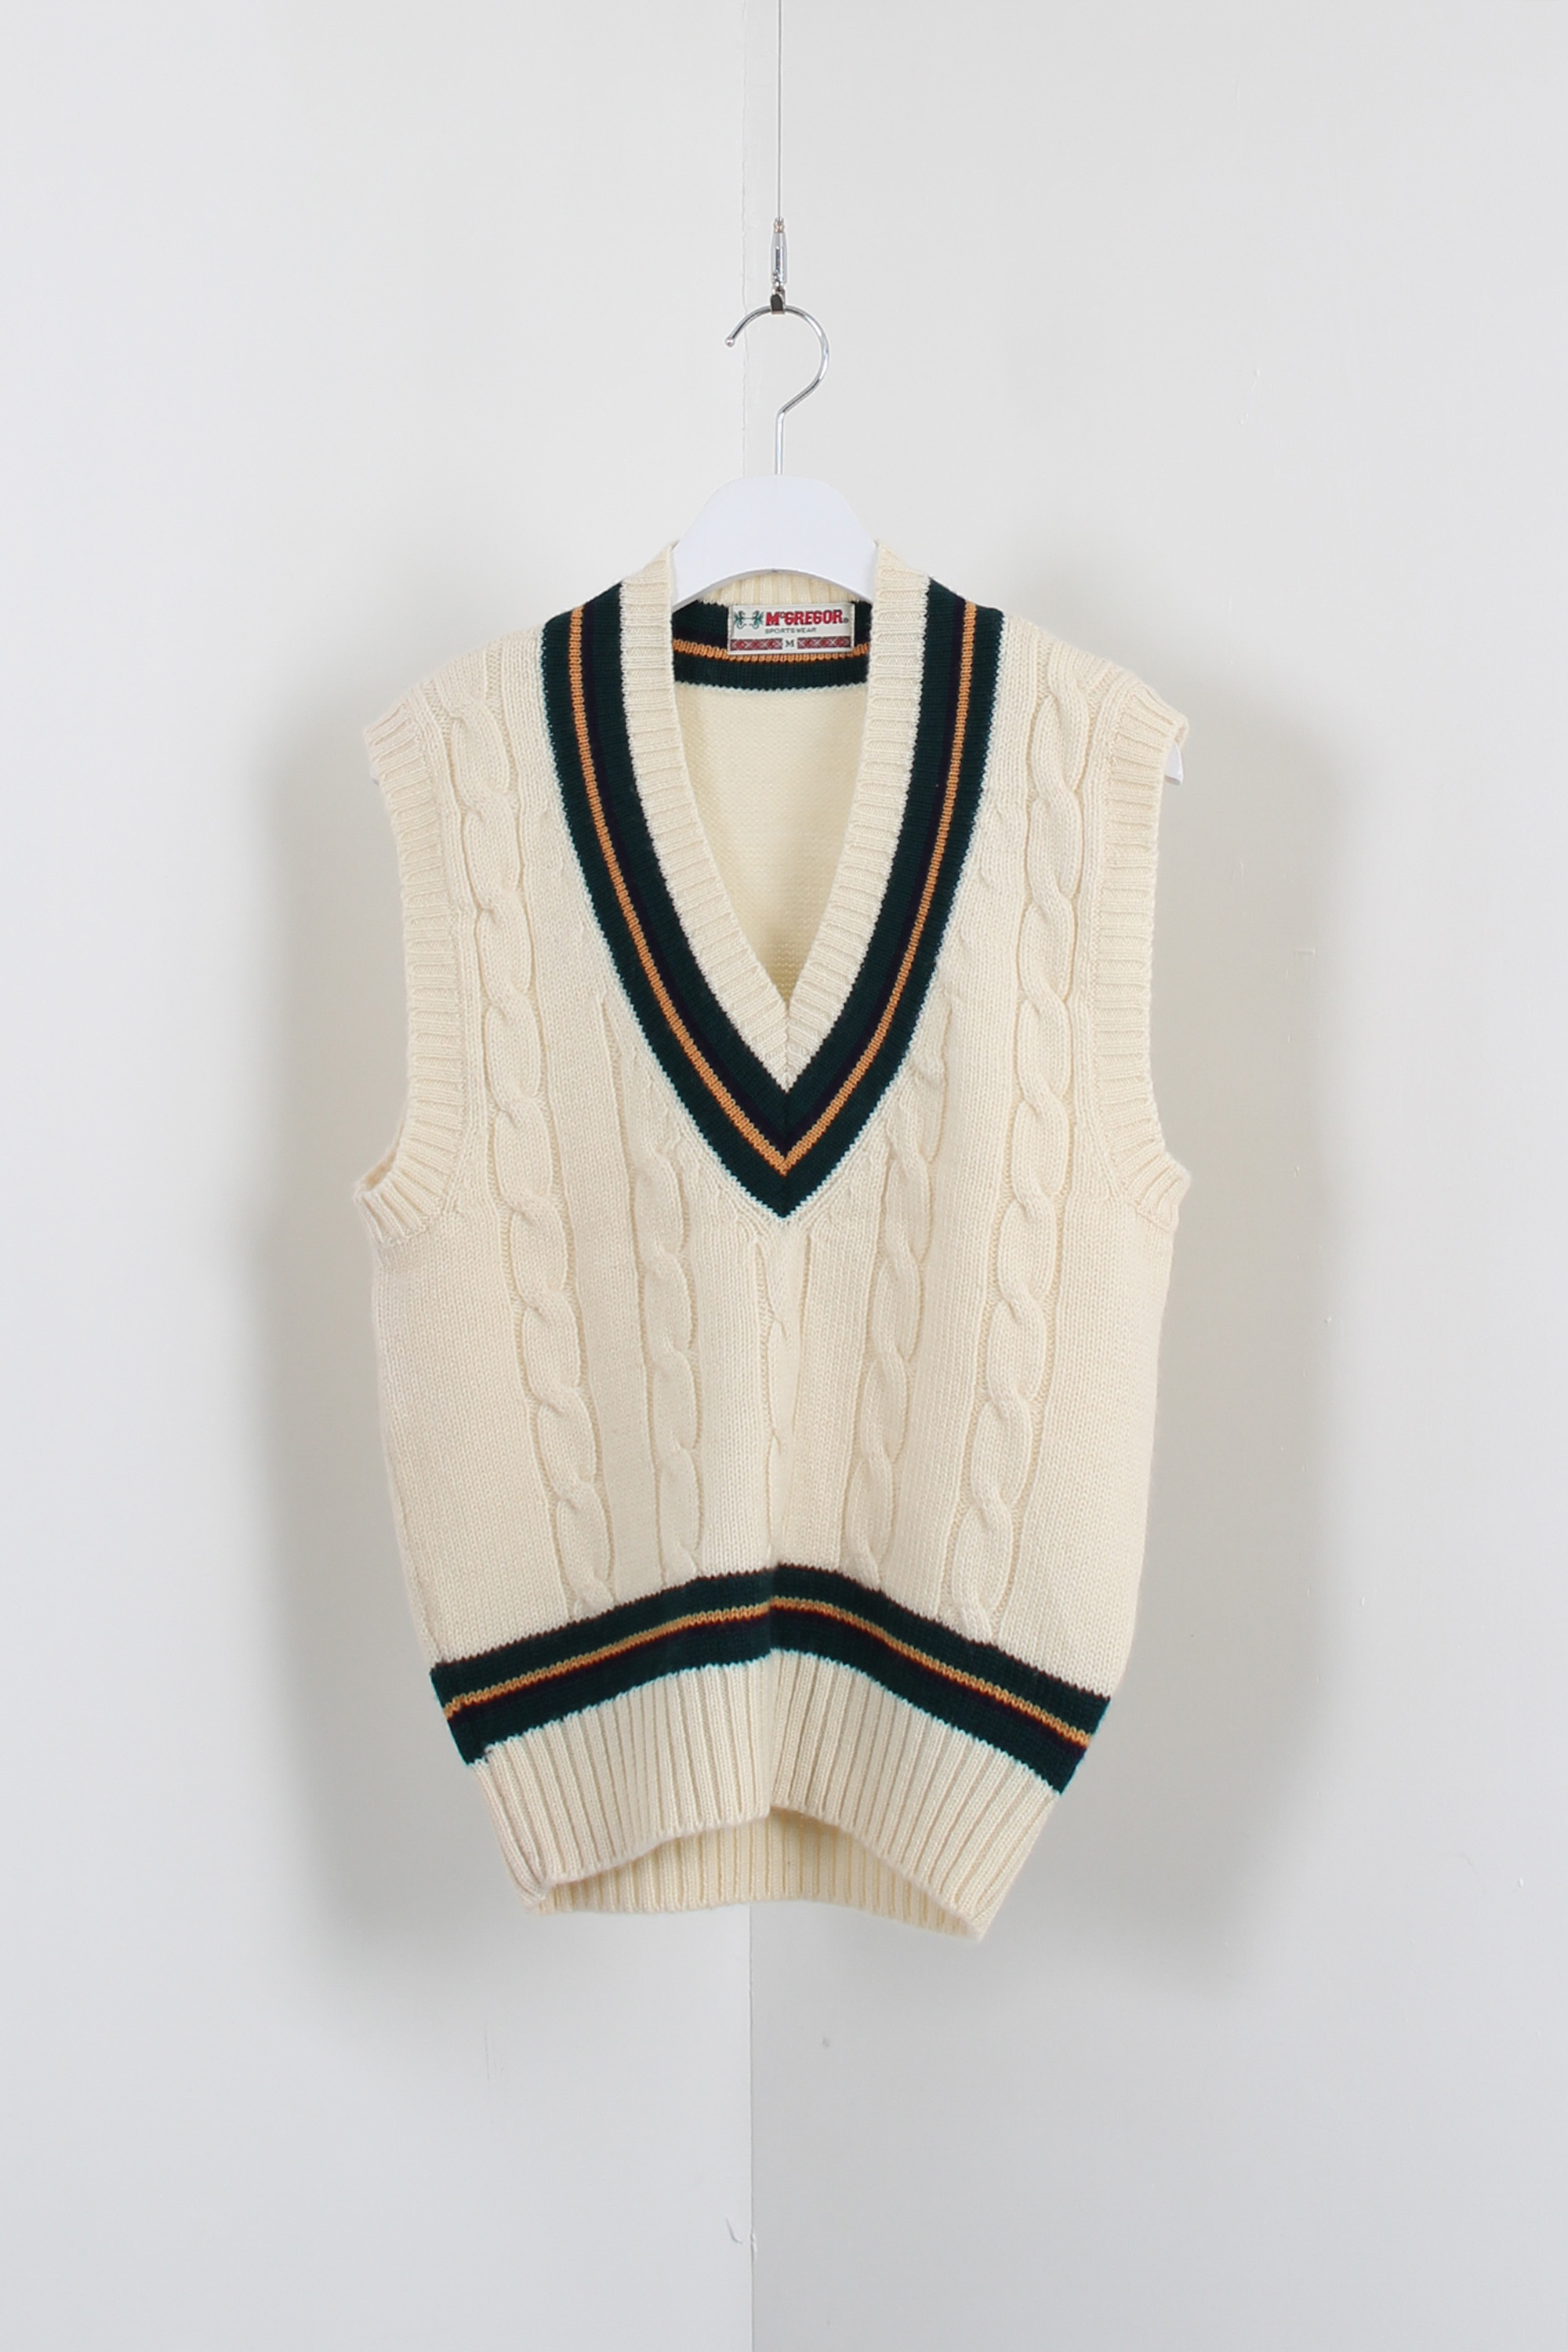 McGregor cricket knit vest